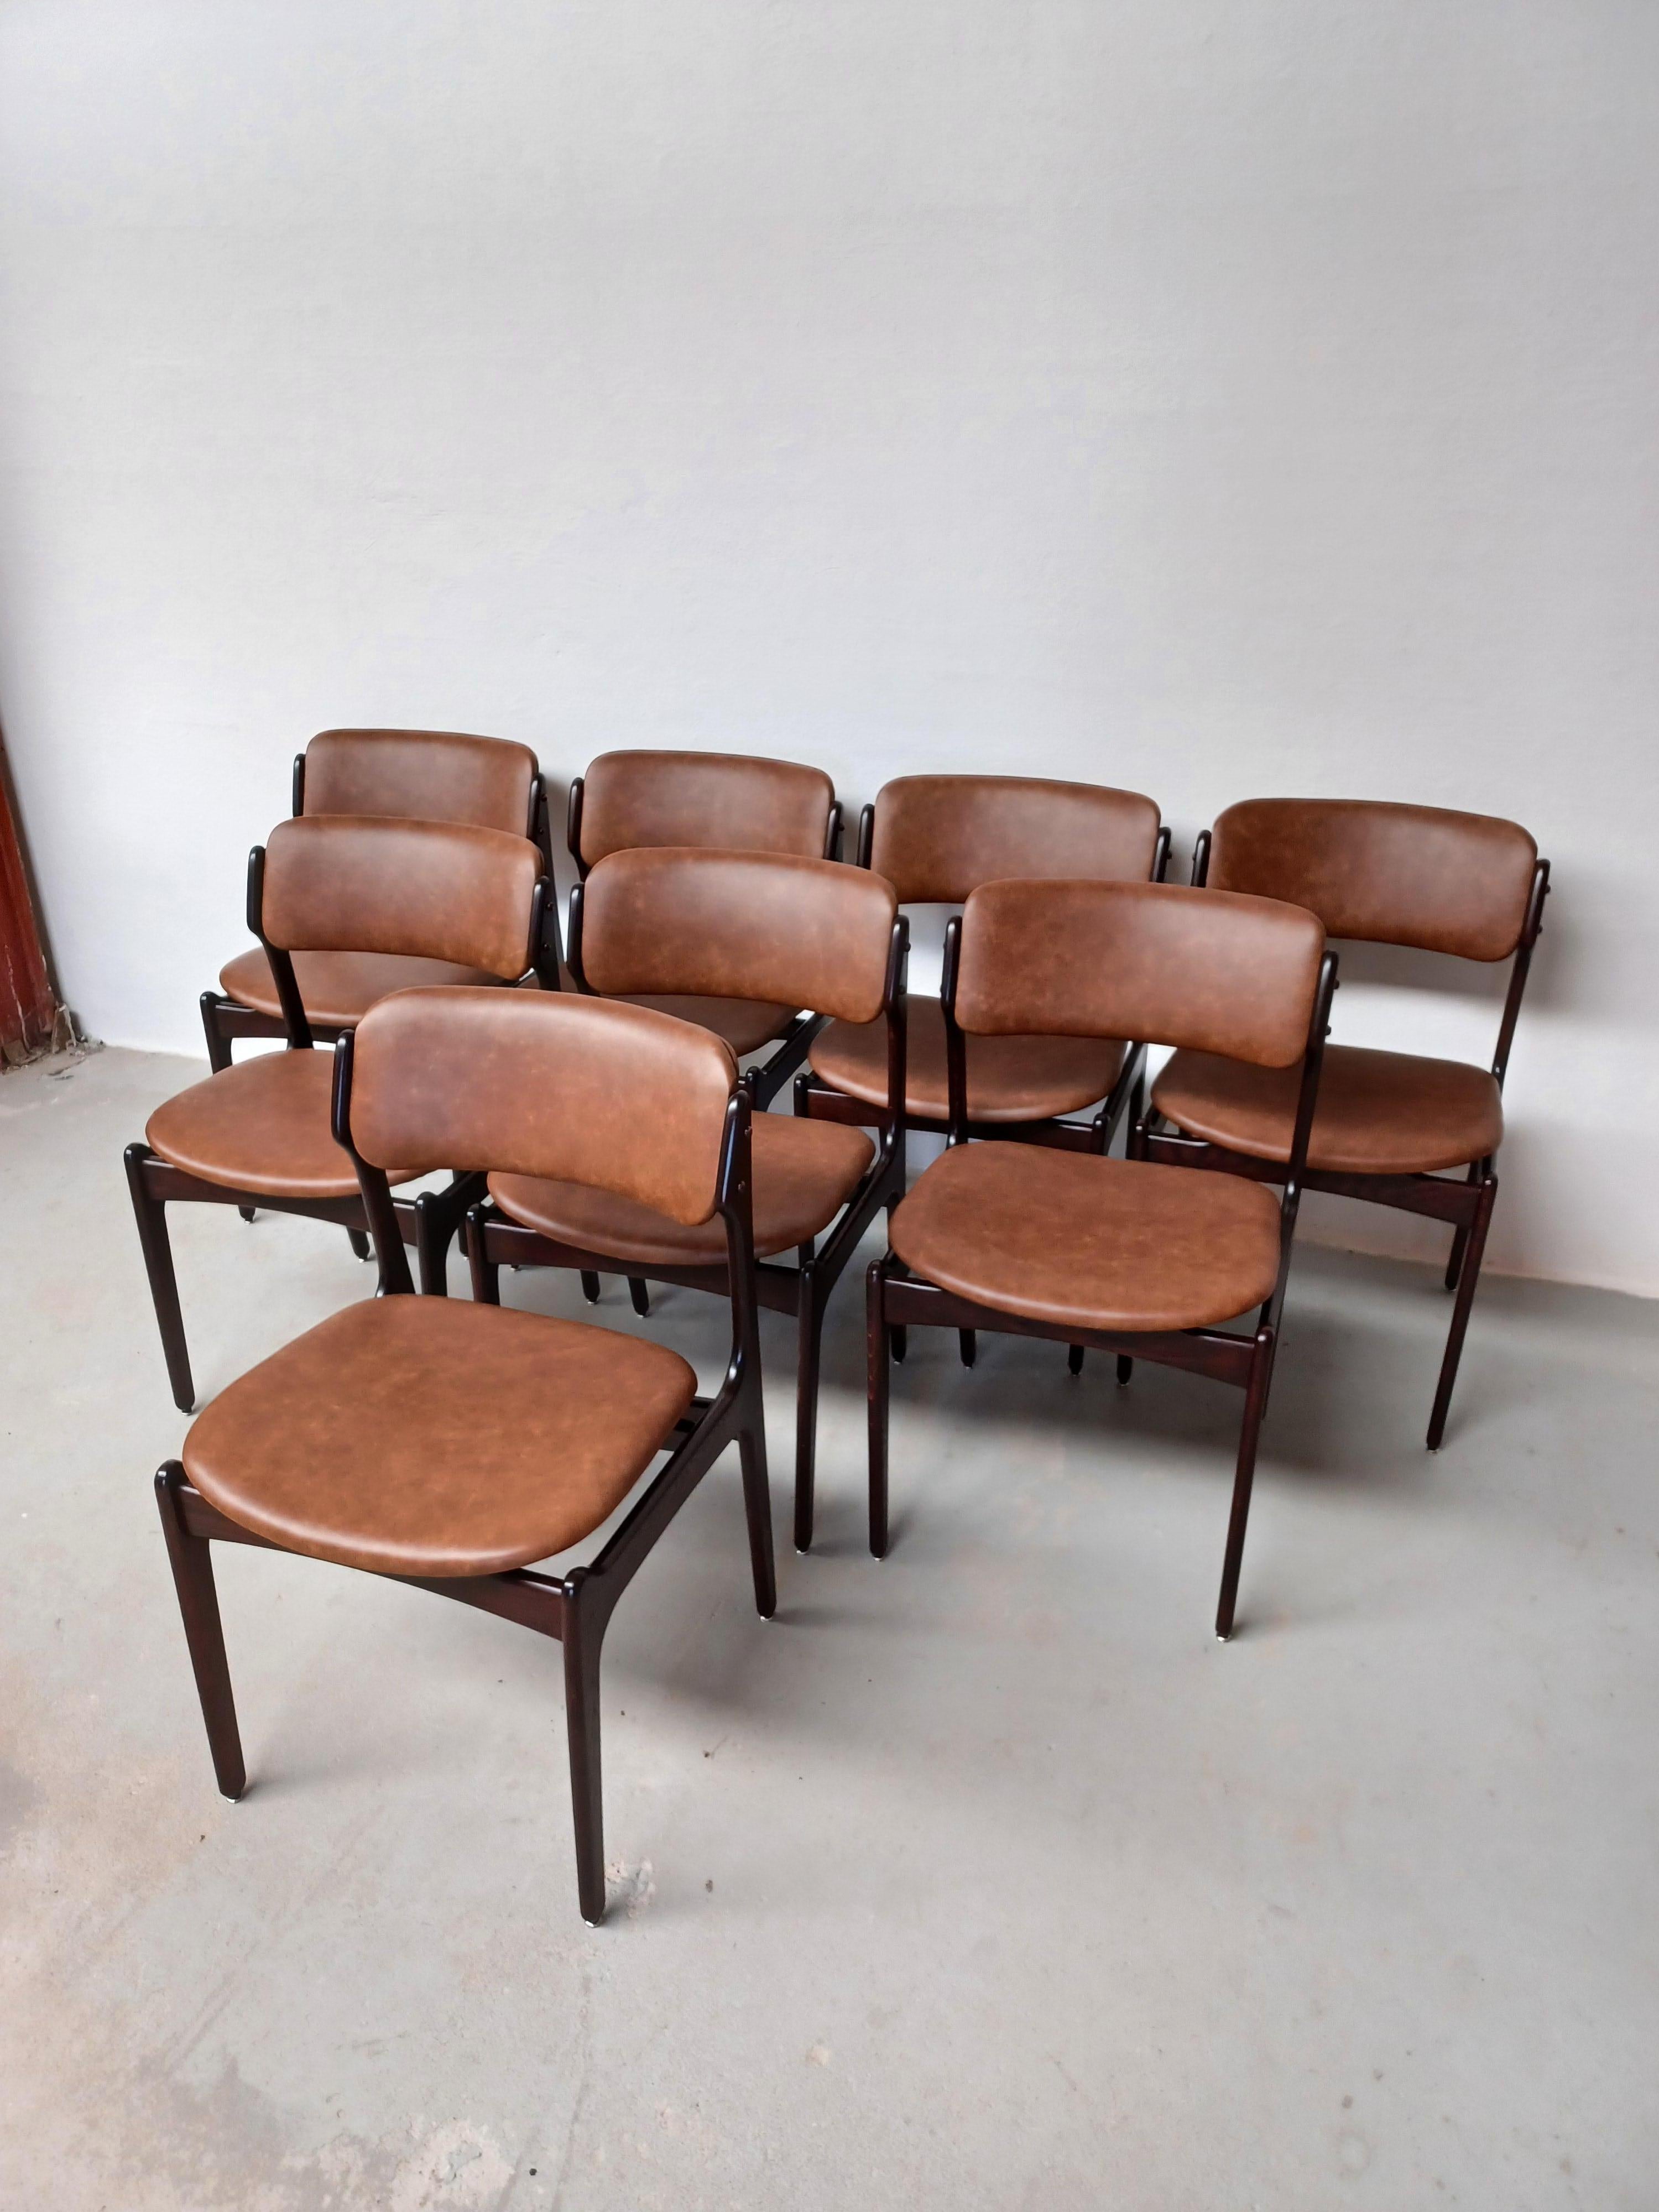 Satz von acht vollständig restaurierten und aufgearbeiteten Esszimmerstühlen aus gegerbter Eiche mit schwimmenden Sitzen, entworfen von Erik Buch für Oddense Maskinsnedkeri, 1960er Jahre

Die Stühle haben eine einfache, ansprechende Konstruktion,